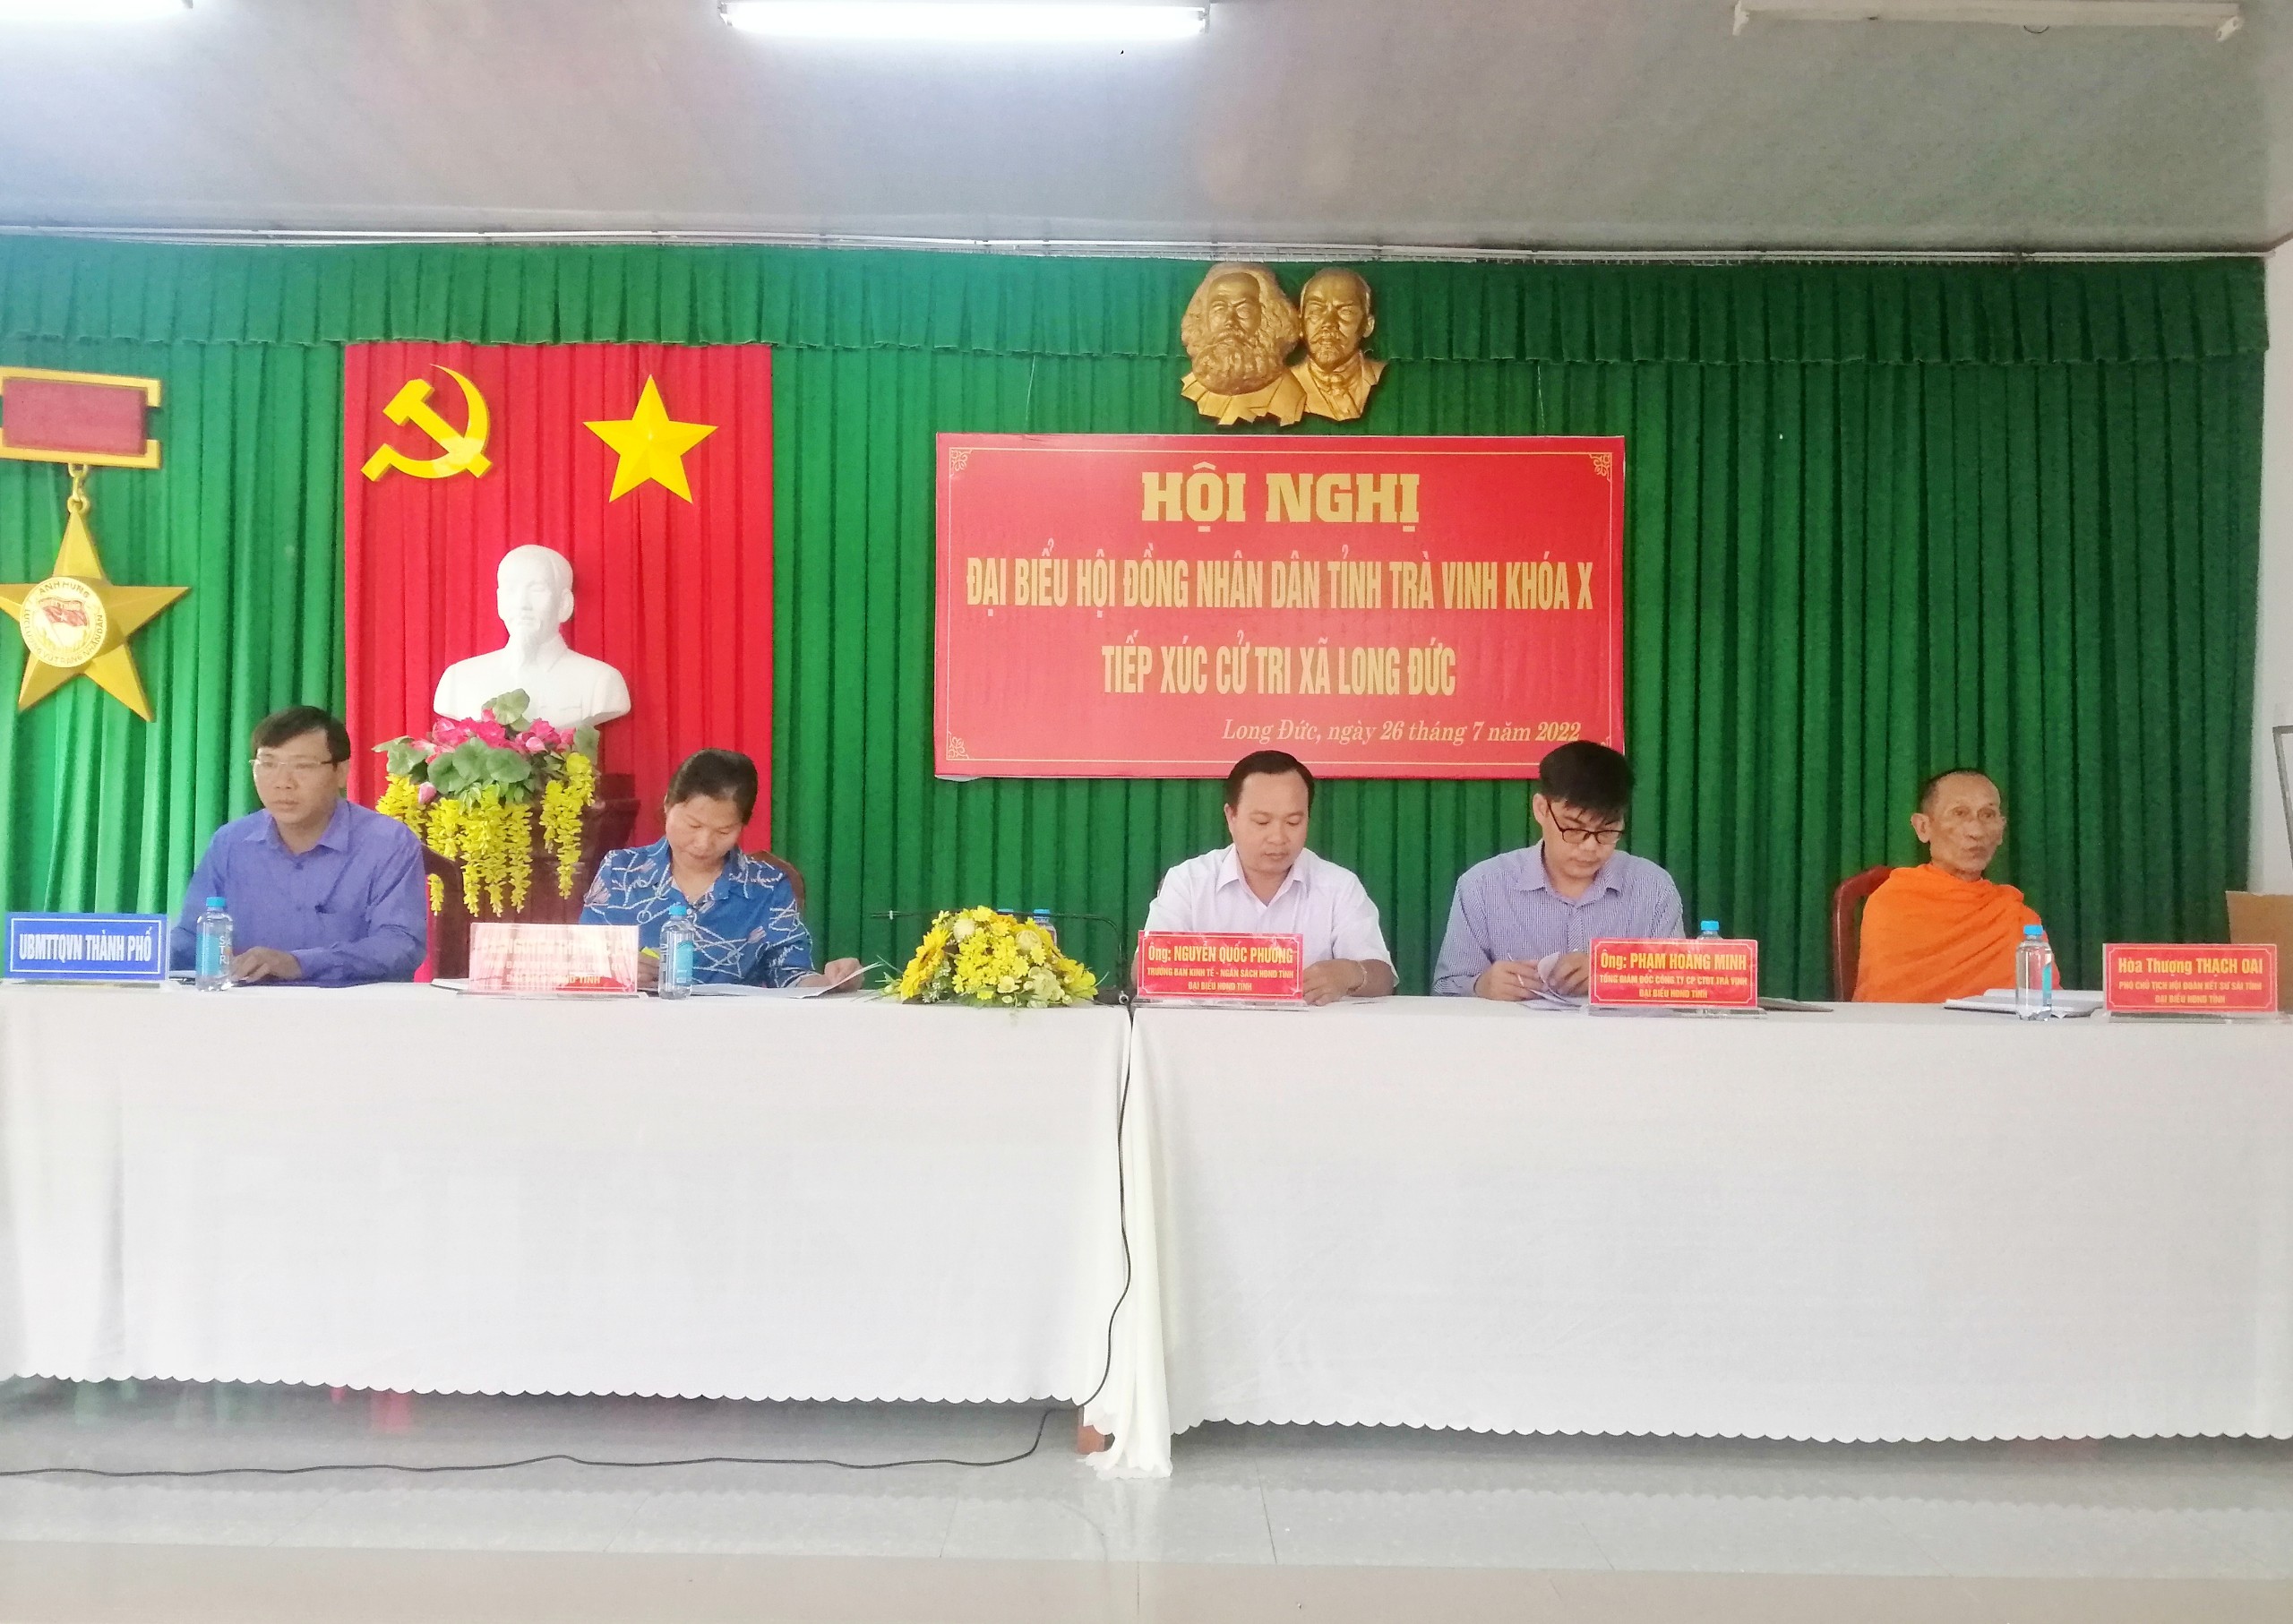 Đại biểu Hội đồng nhân dân tỉnh Trà Vinh khoá X tiếp xúc cử tri trên địa bàn thành phố Trà Vinh sau kỳ họp thứ 5